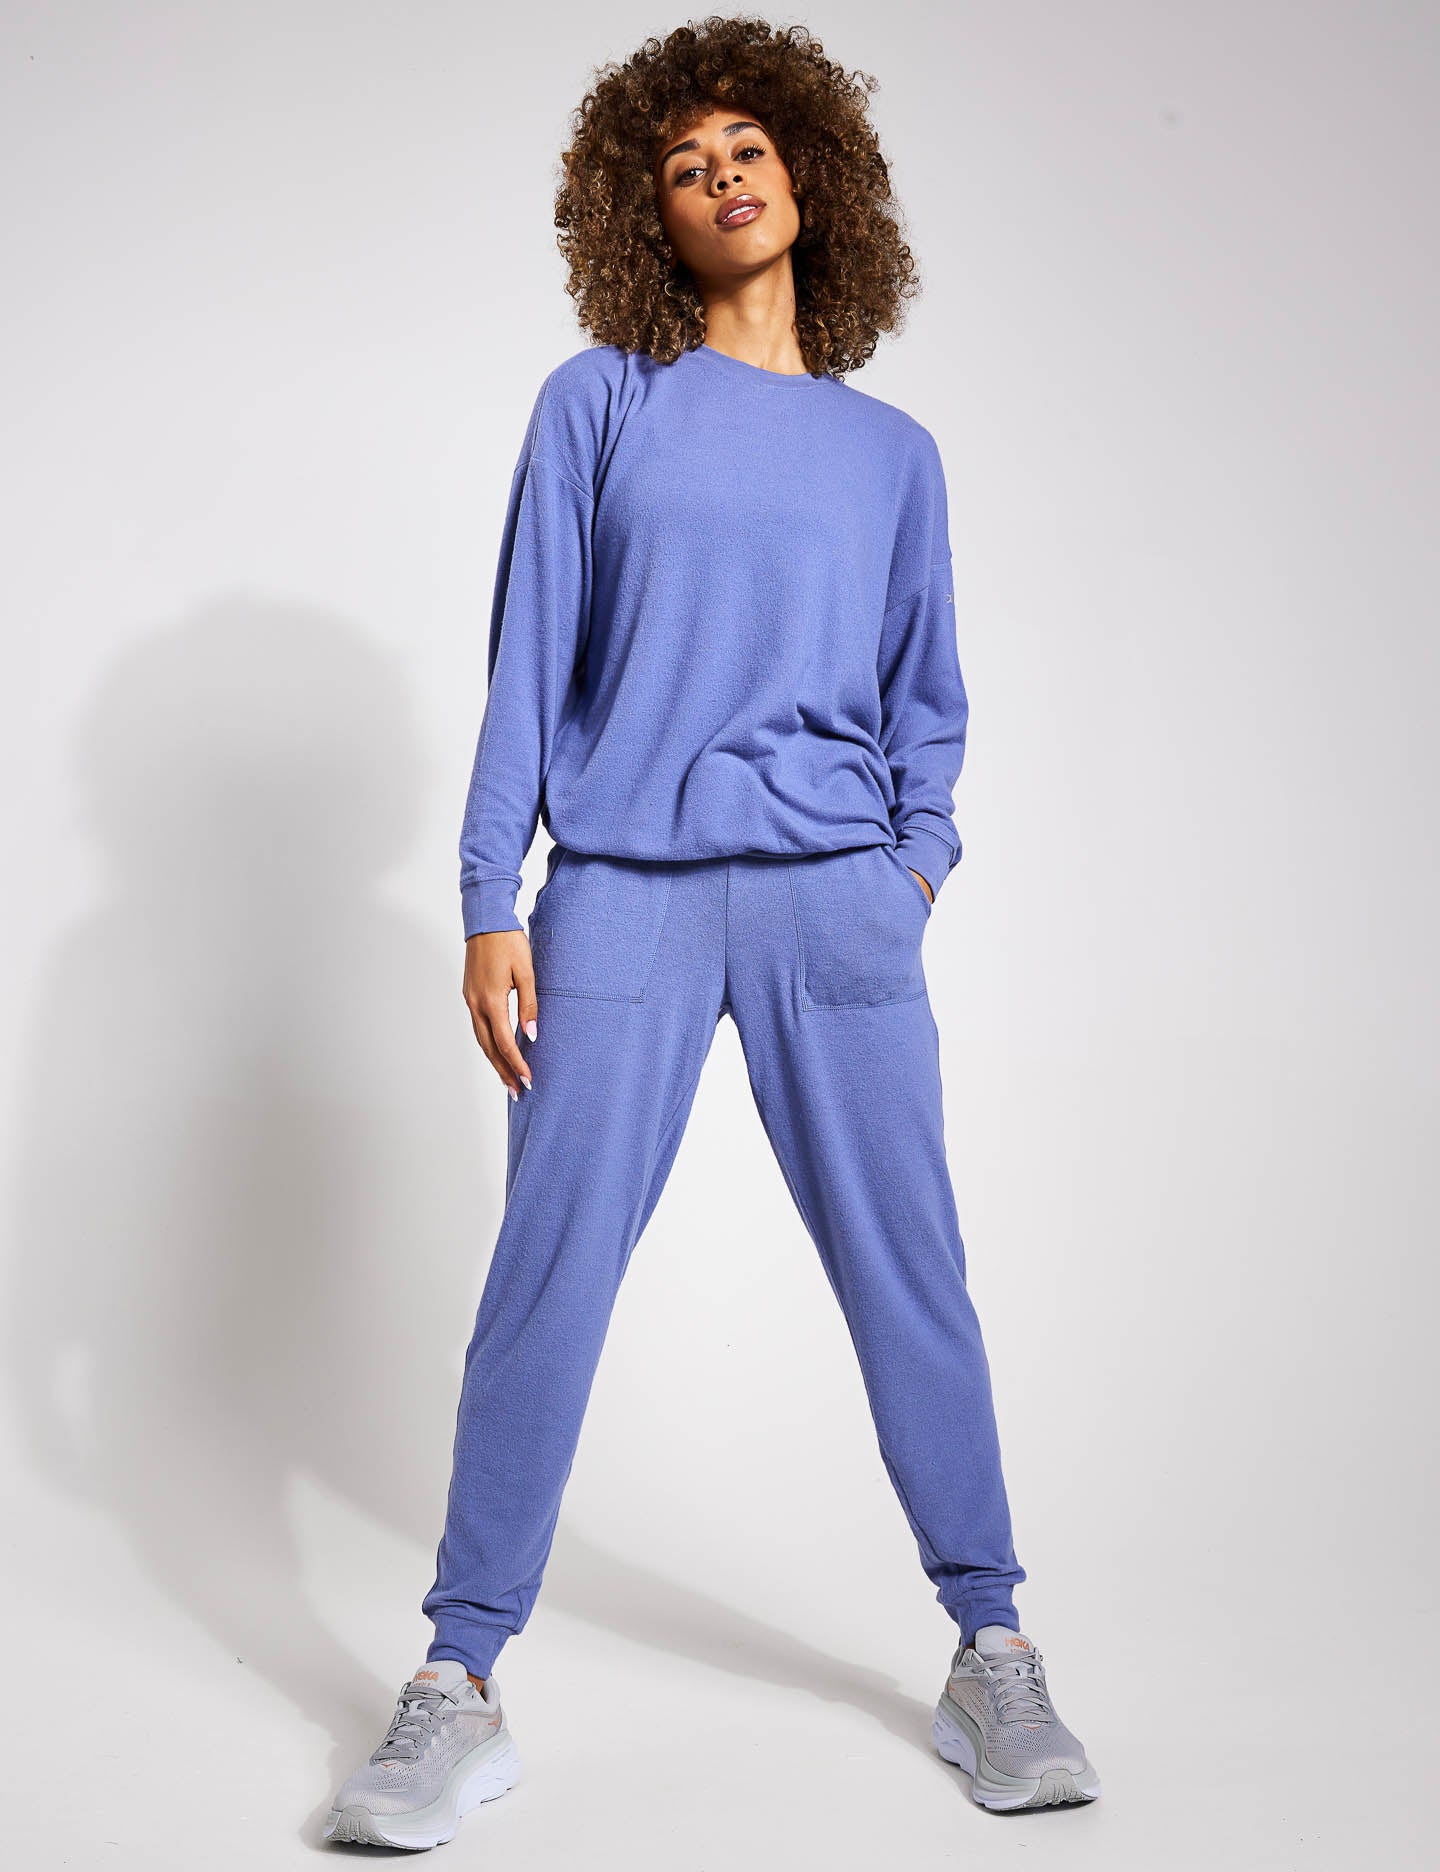 Soho Sweatpant - Steel Blue  Sweatpants, Wear test, How to wear